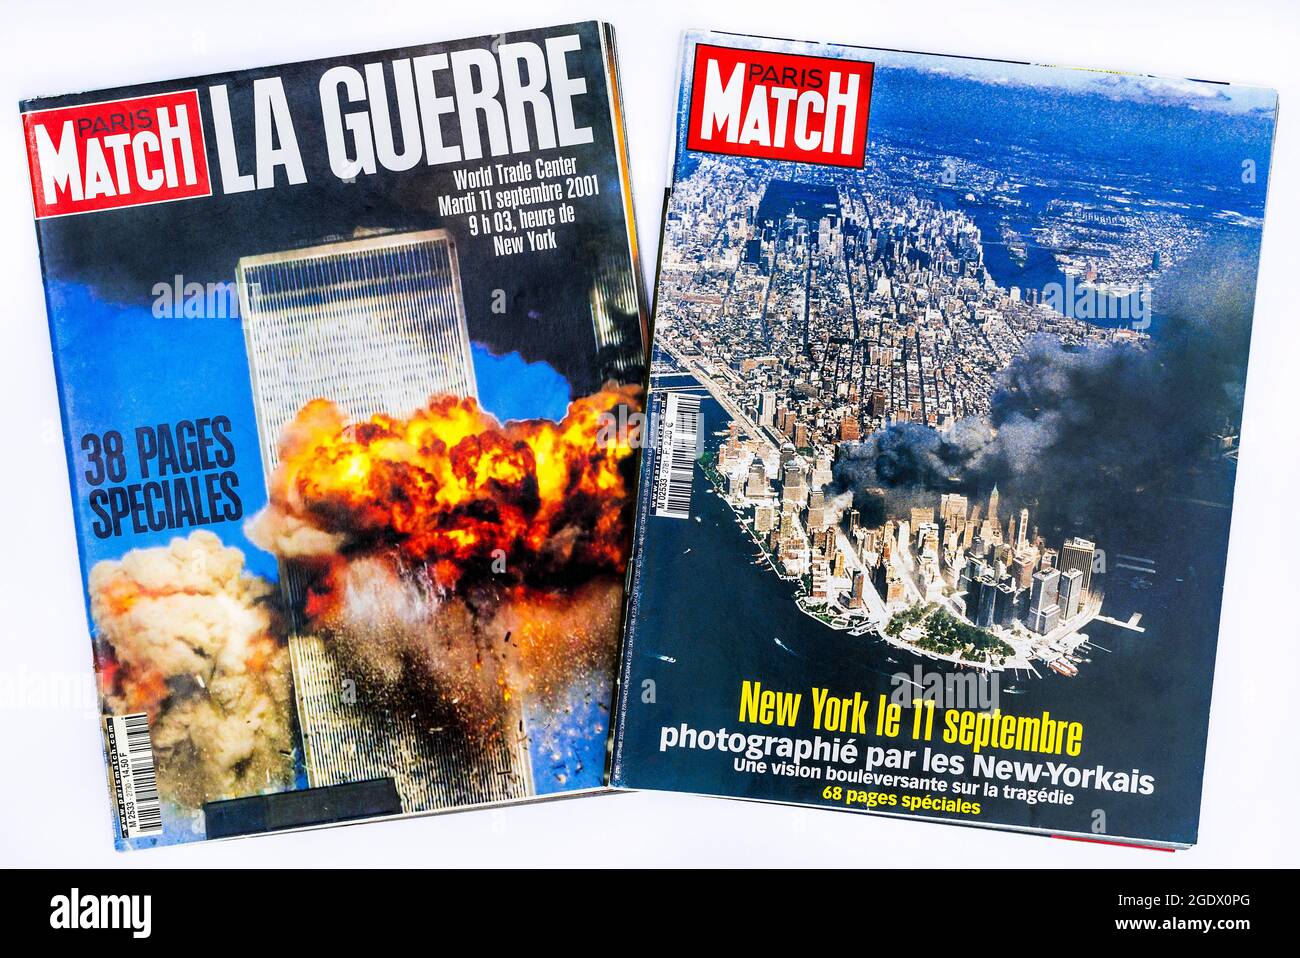 La rivista francese "Paris Match" riporta l'attacco terroristico del 9/11 al World Trade Center di New York, USA, avvenuto il 11 settembre 2001. Foto Stock